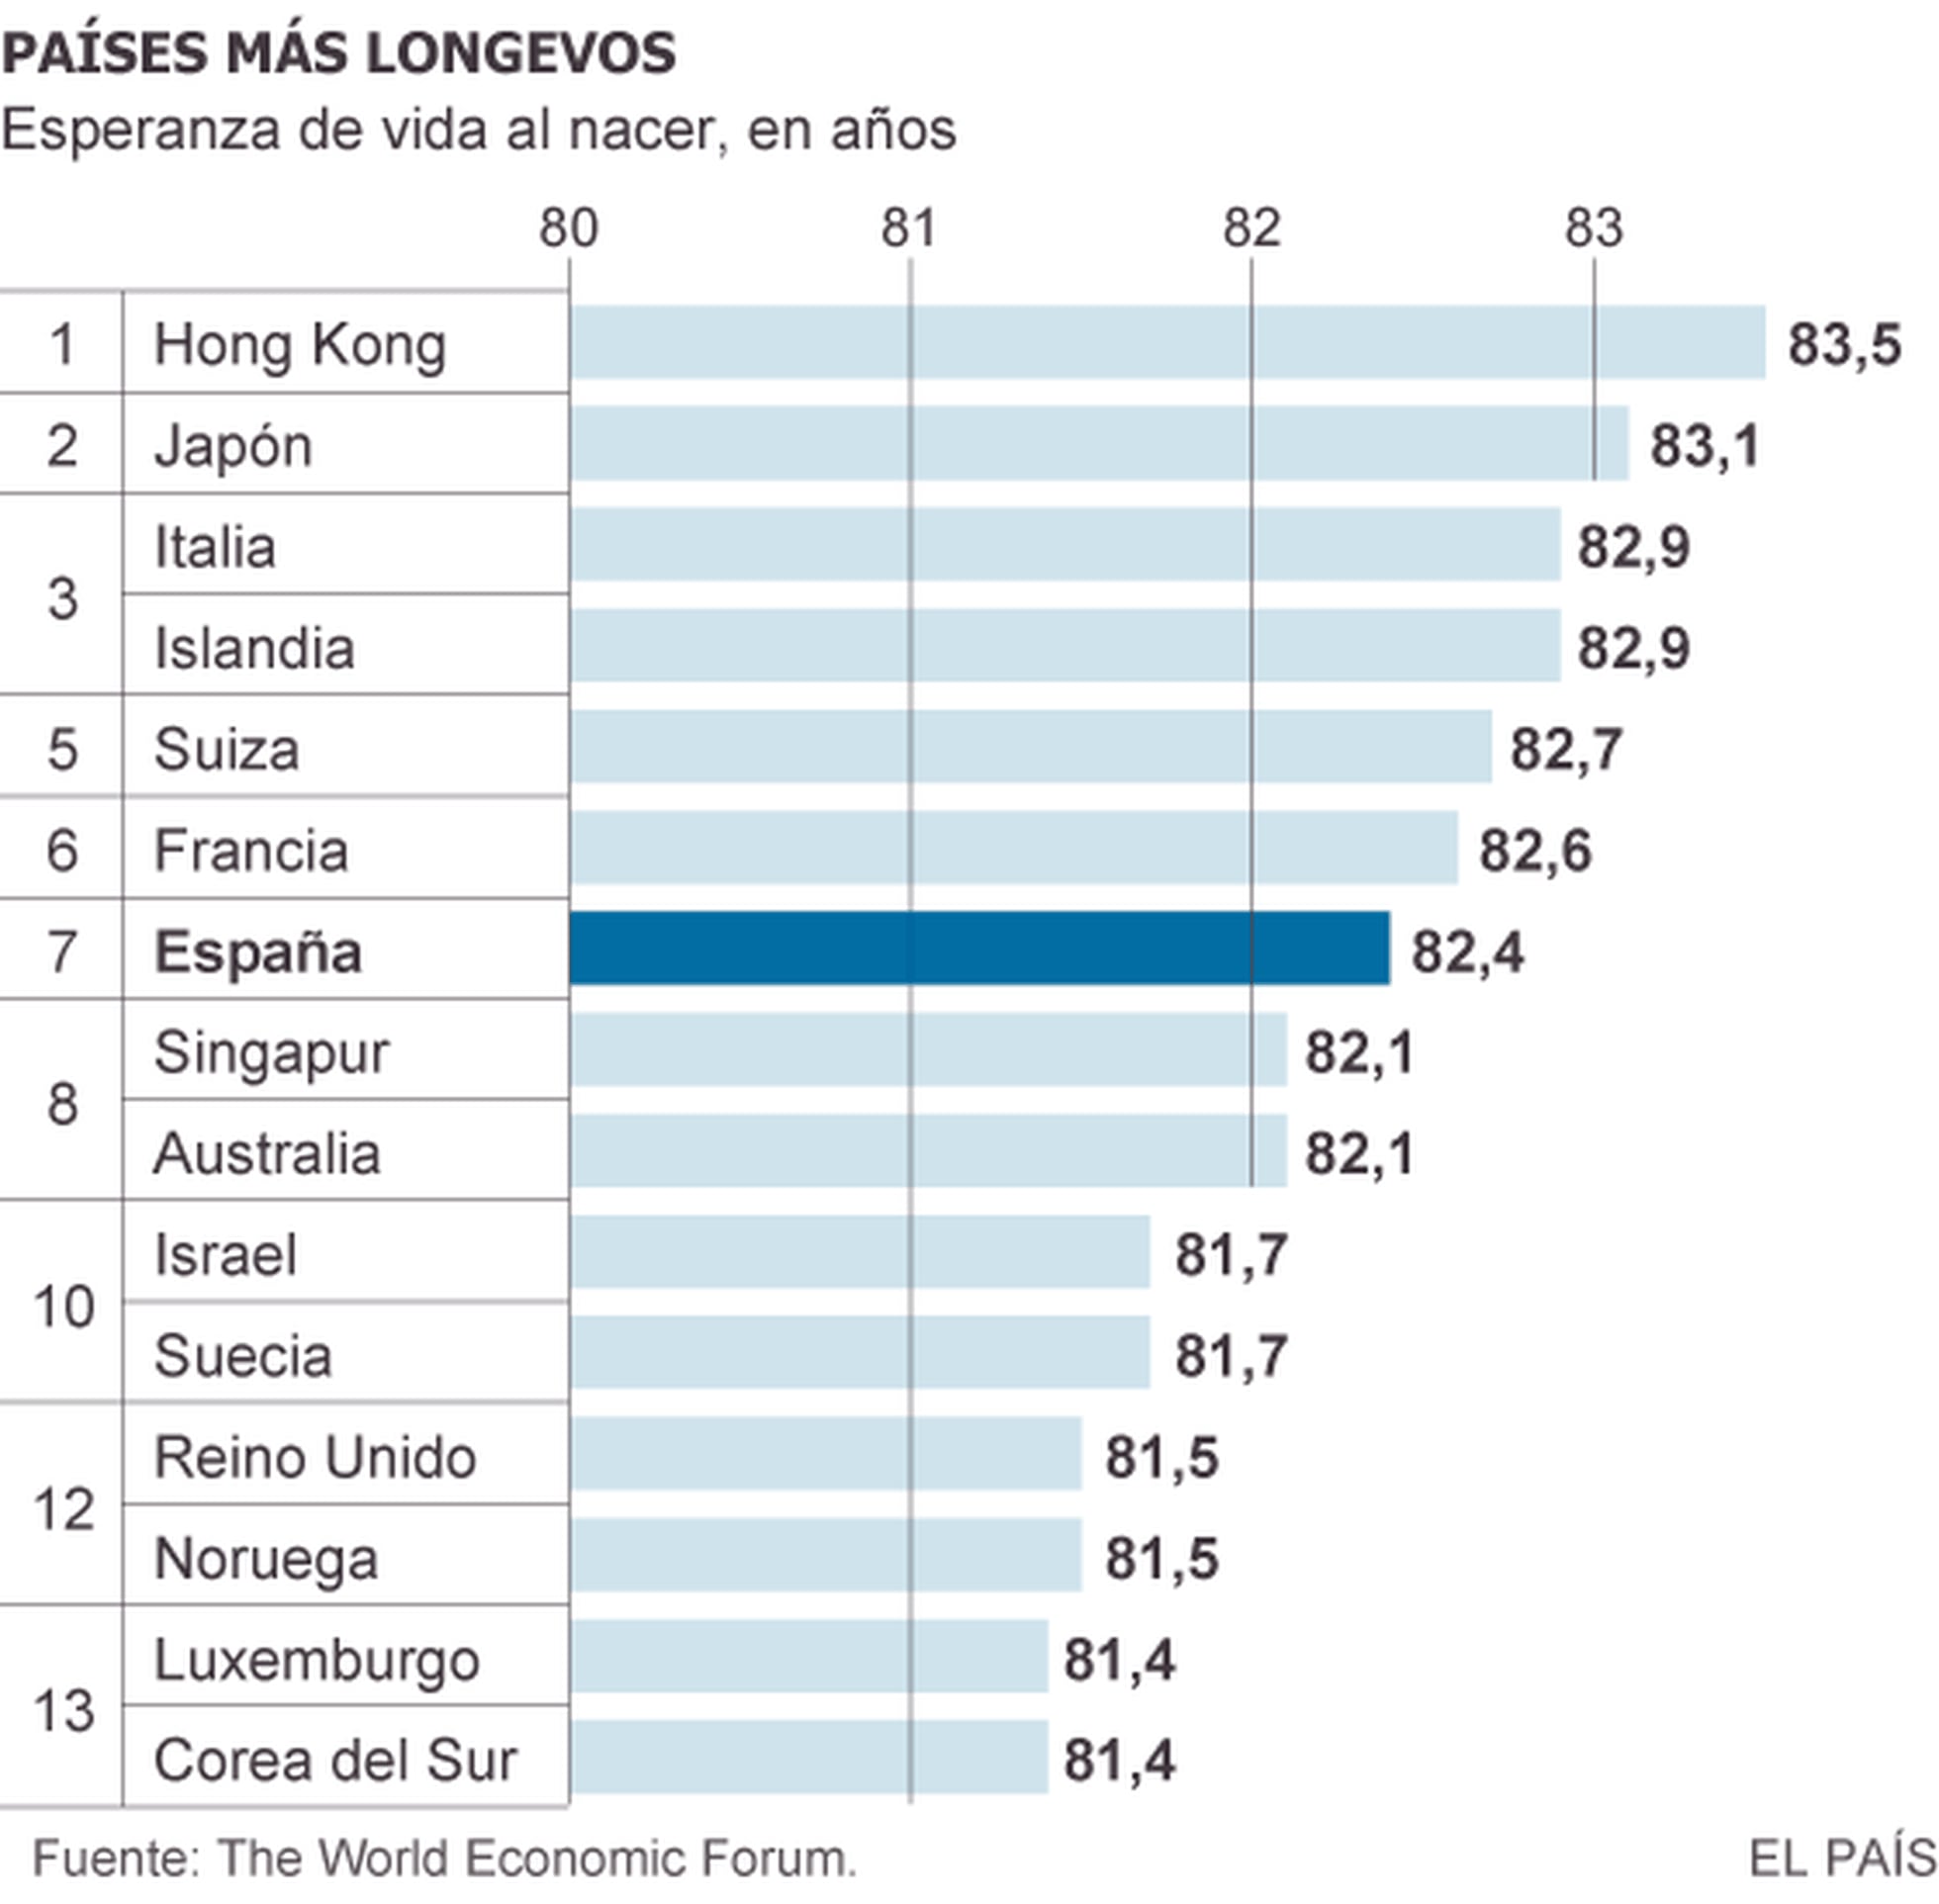 Esperanza de vida España ocupa el séptimo lugar en la lista de países